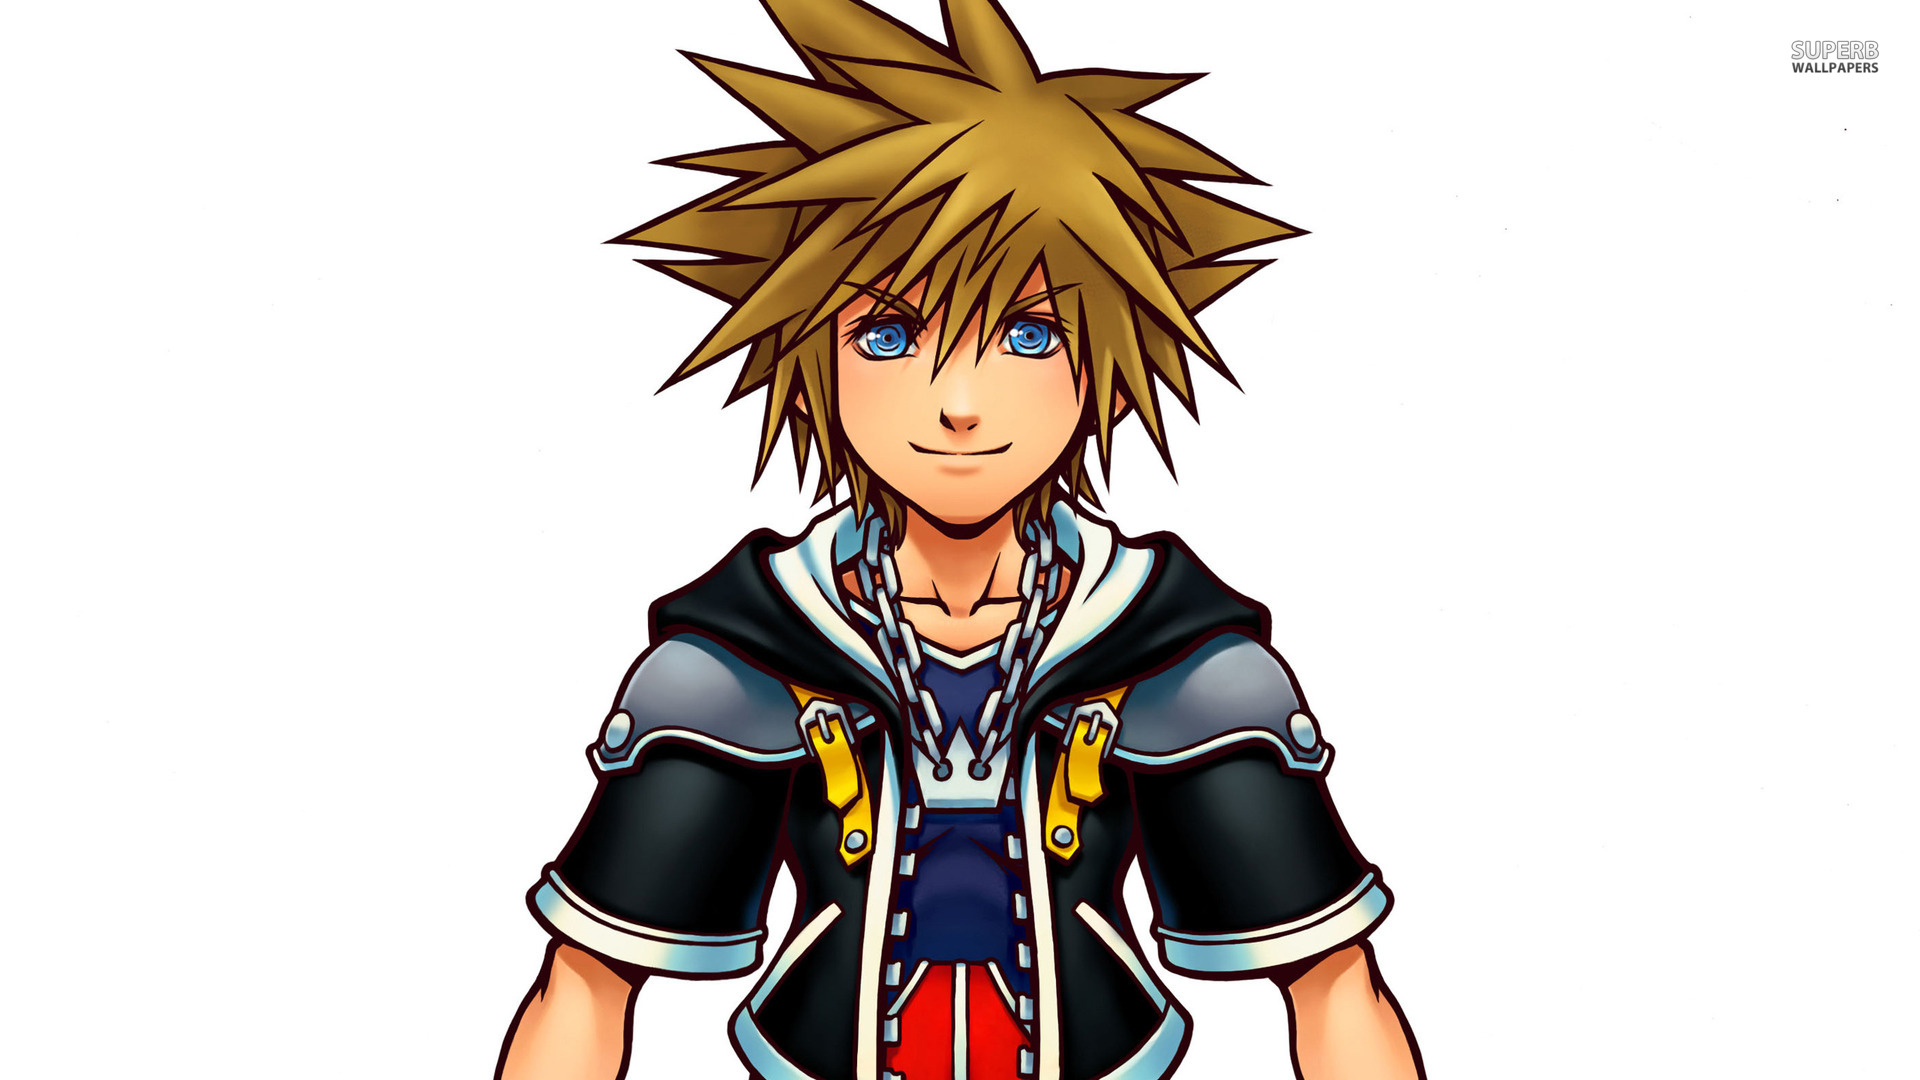 Data-Sora - Kingdom Hearts Wiki, the Kingdom Hearts encyclopedia